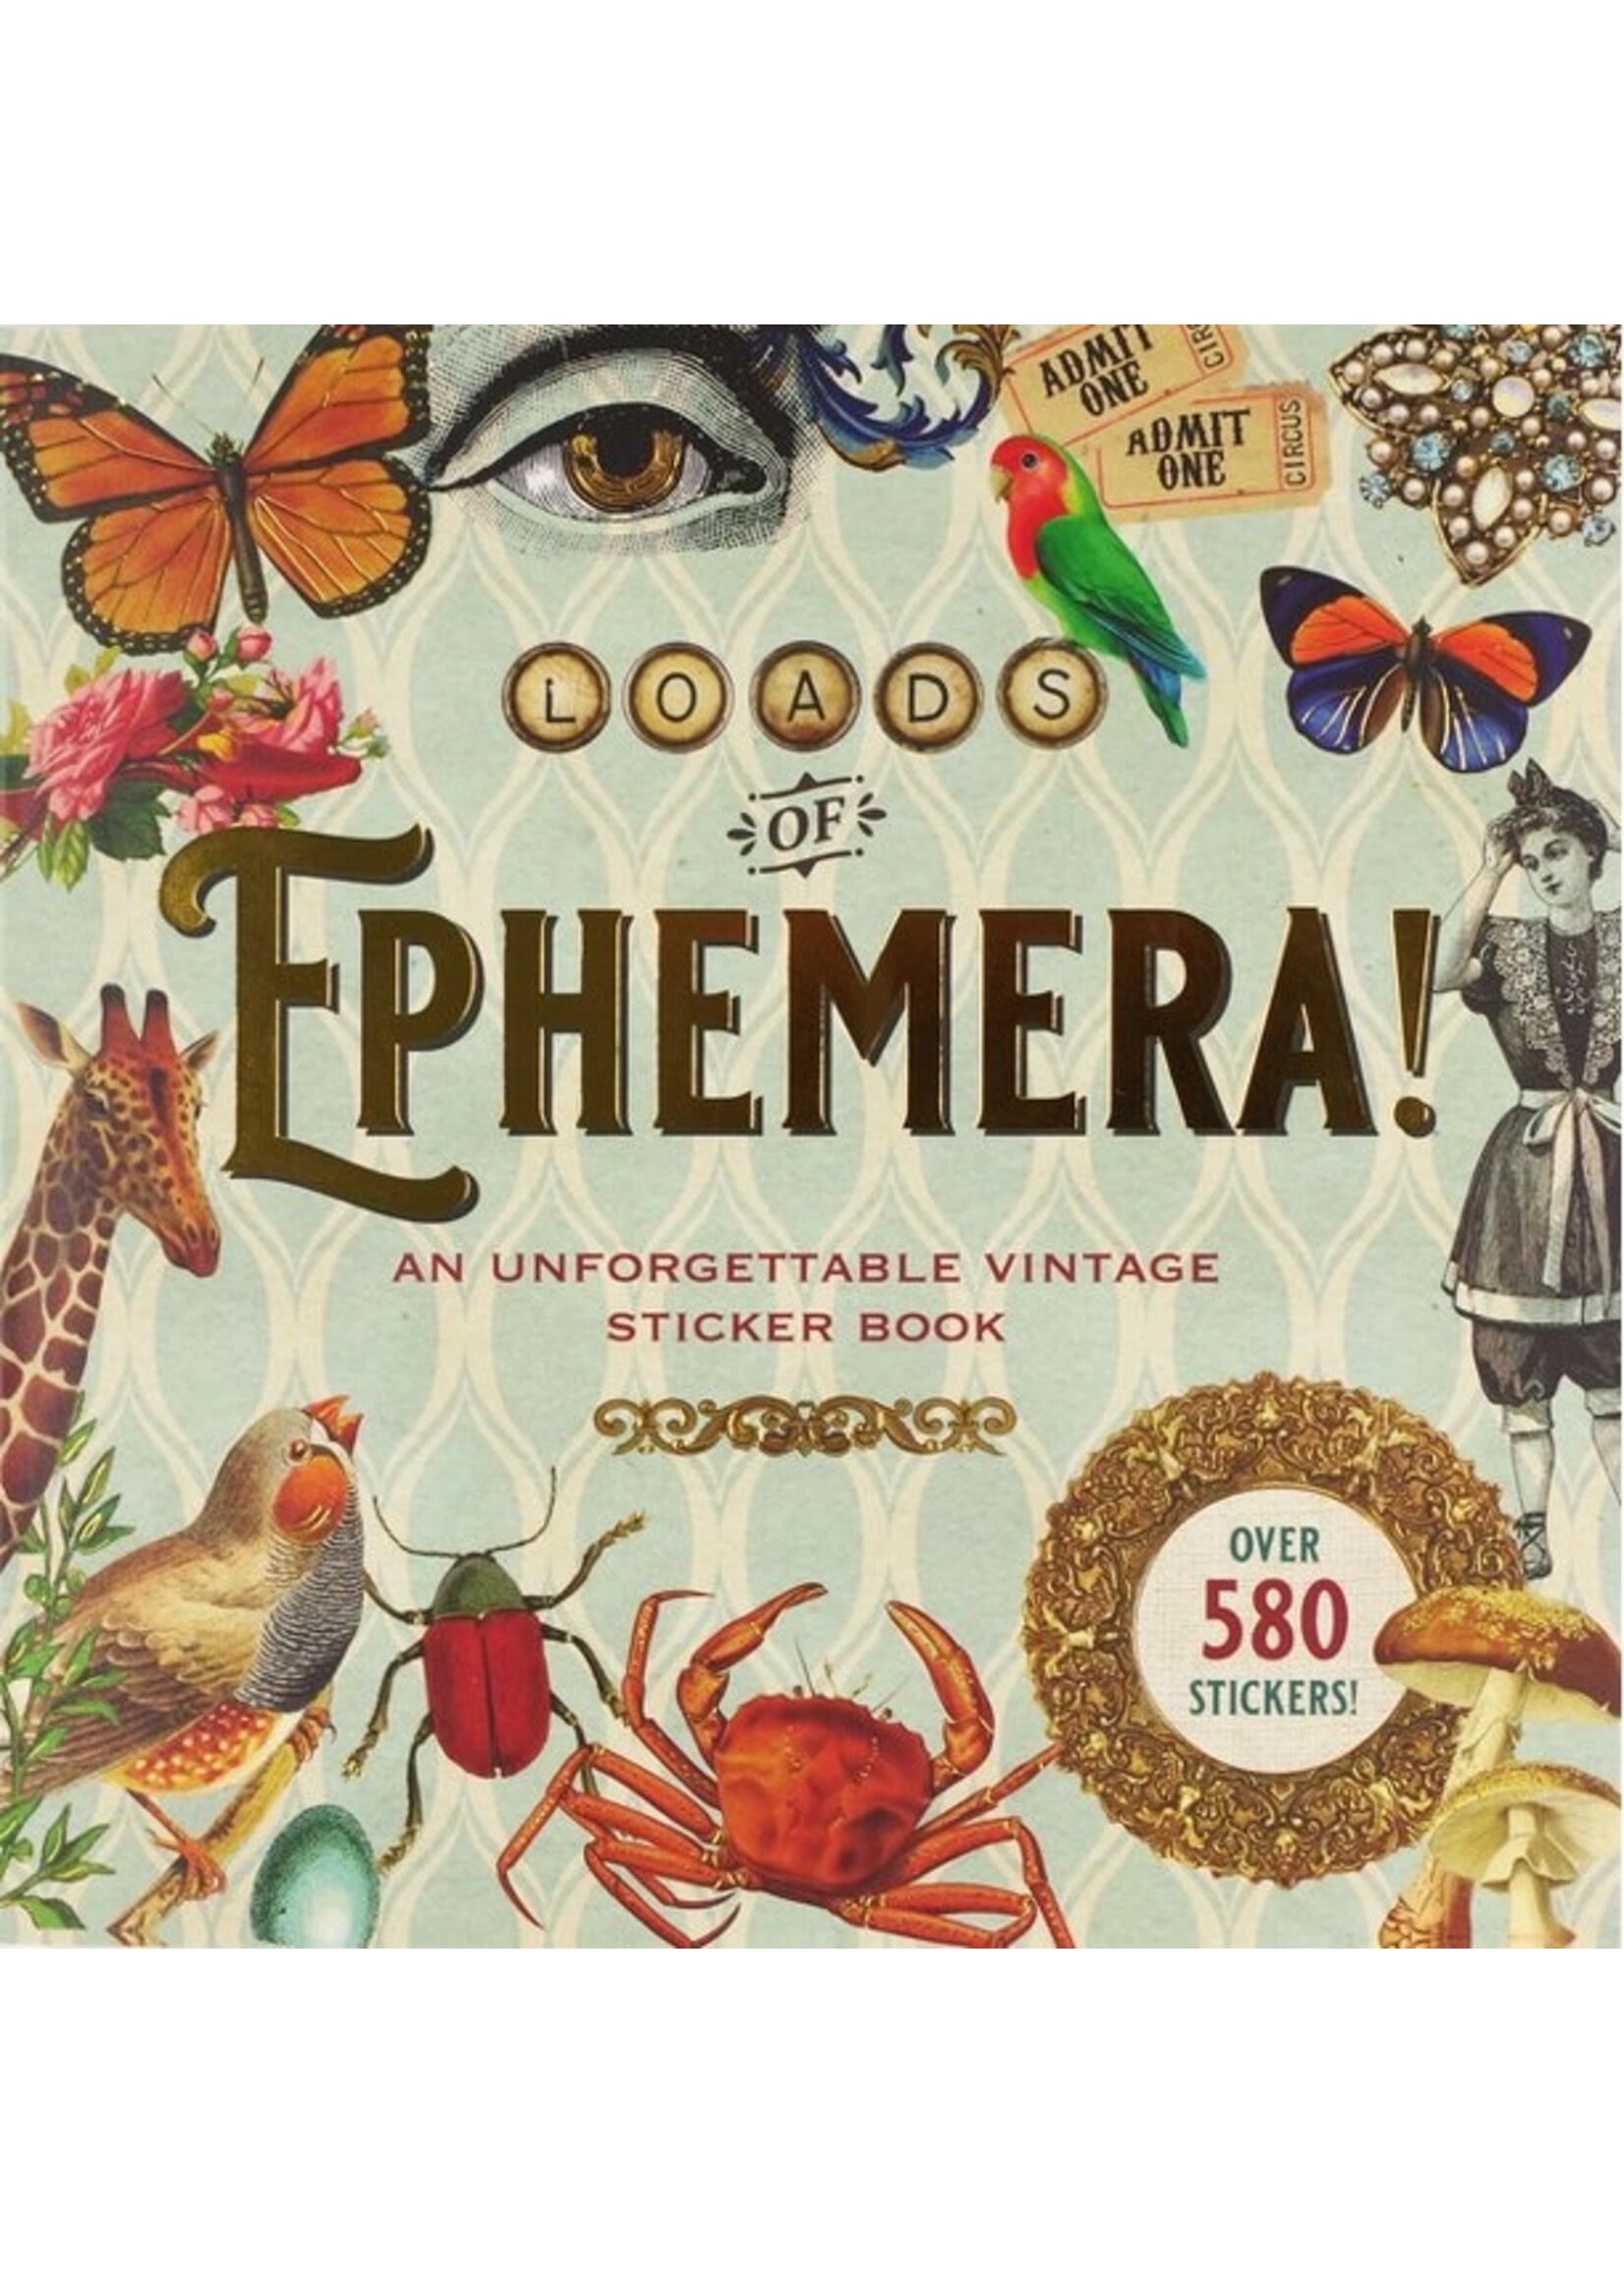 Loads of Ephemera Stickers Book